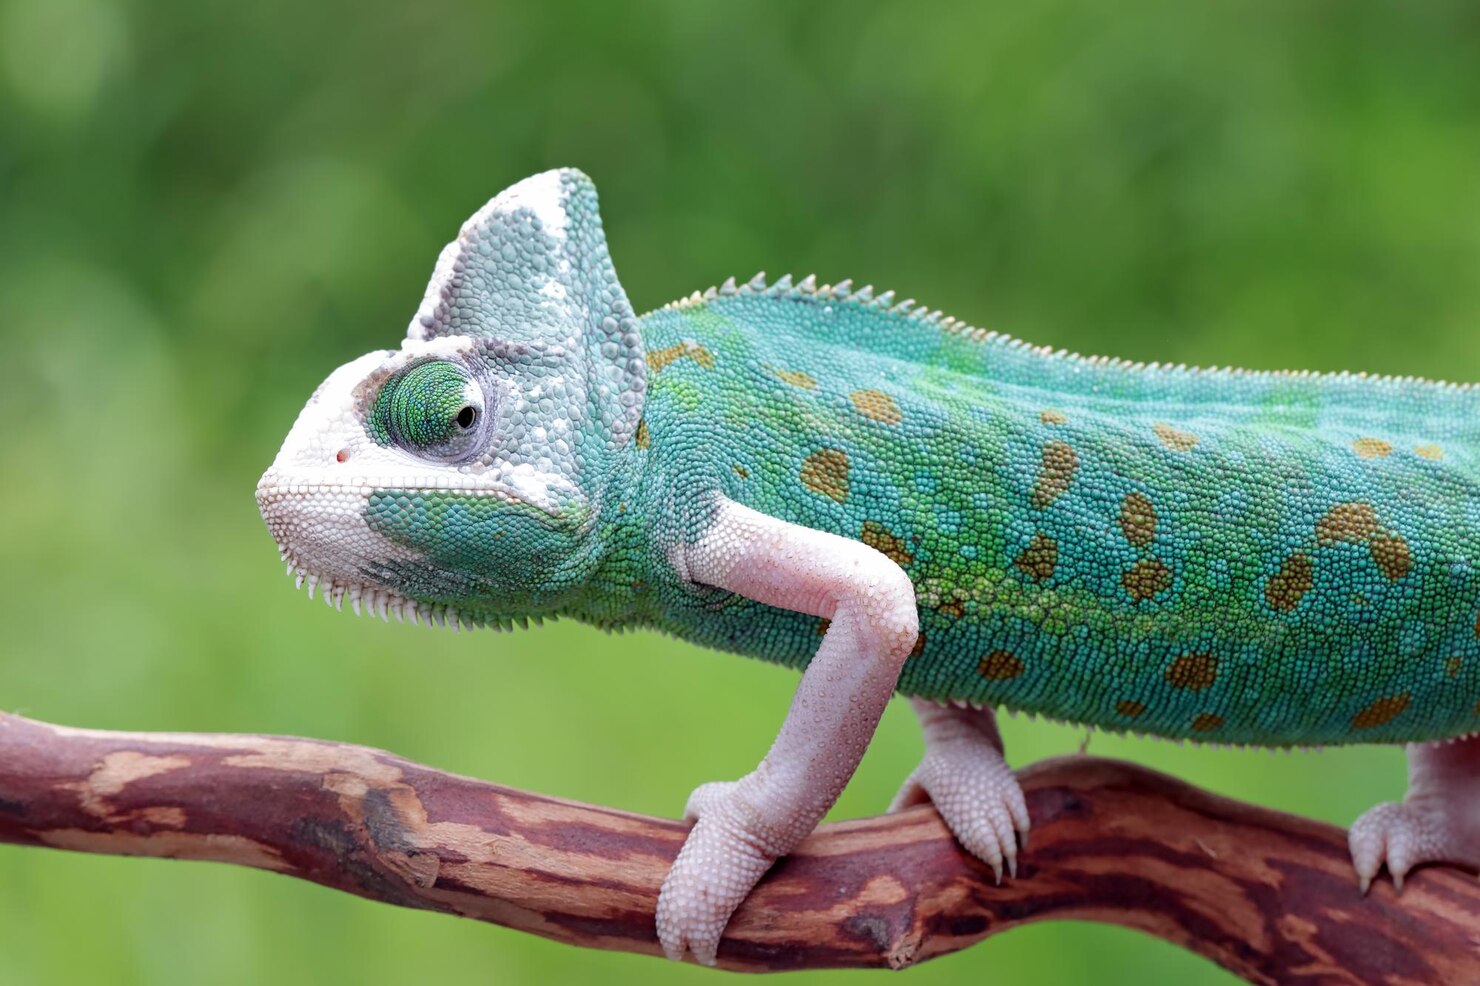 How Chameleons Change Color